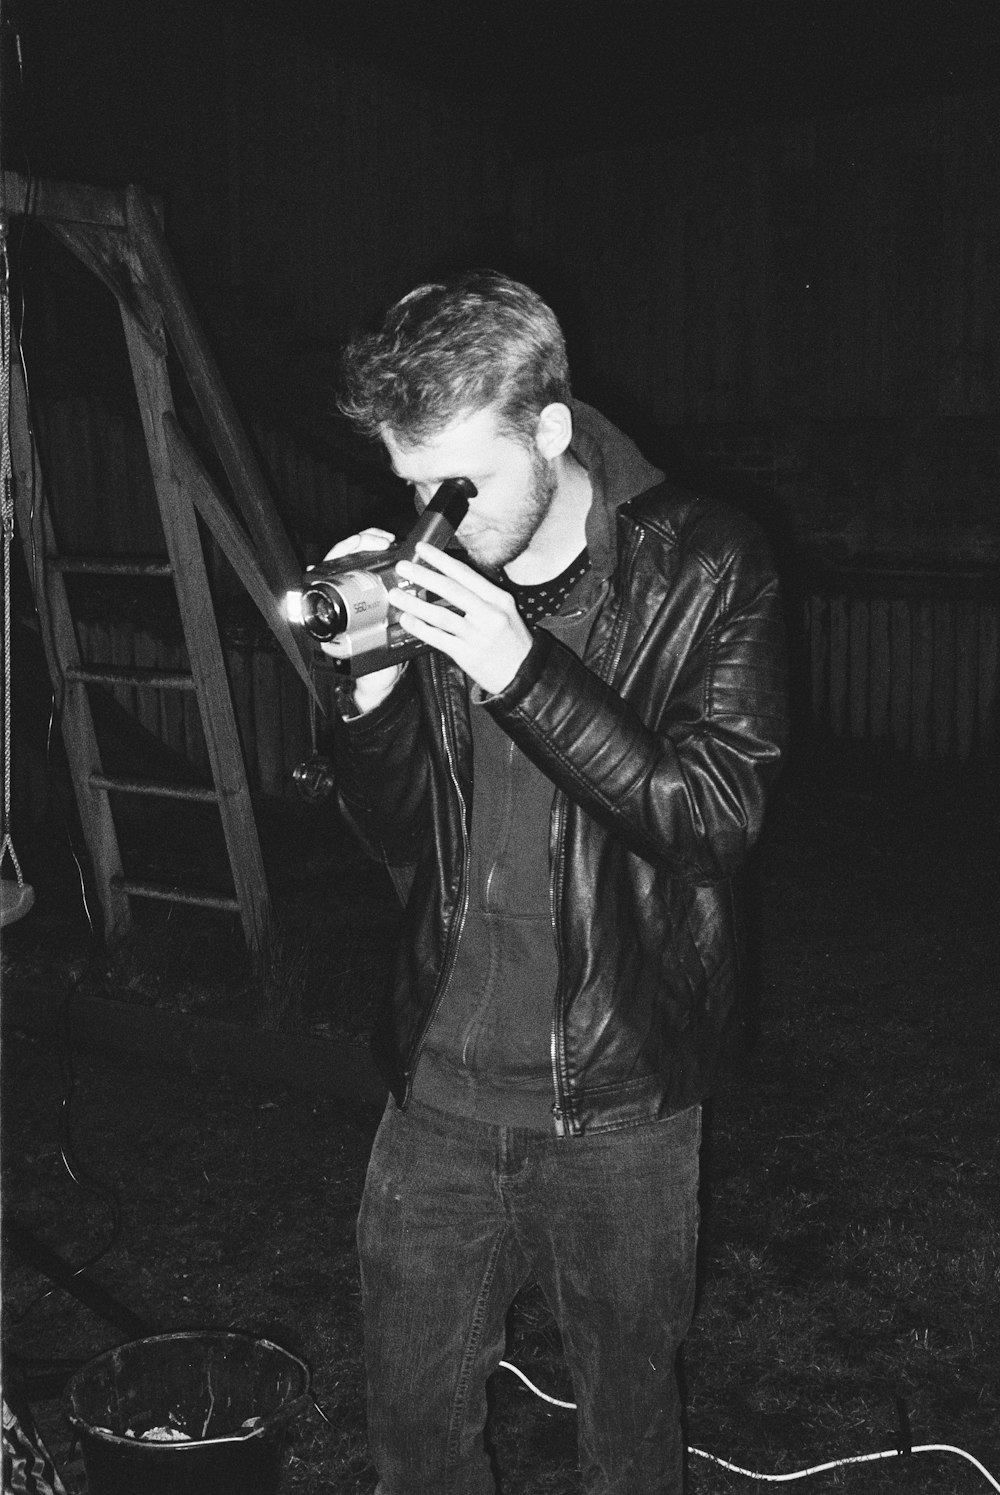 man in black leather jacket holding black dslr camera